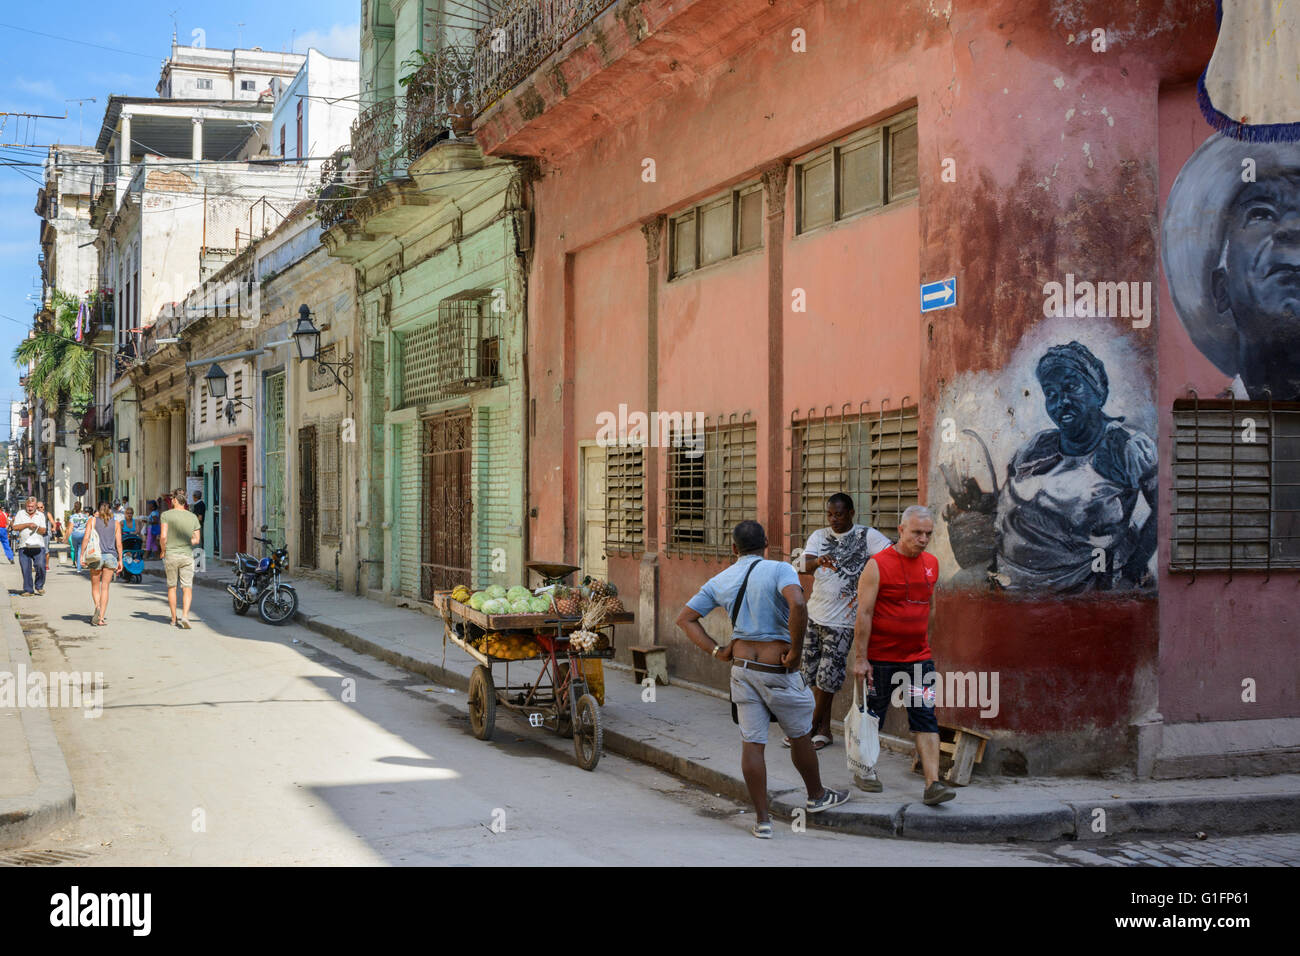 Una tipica scena di strada con una frutta e verdura in stallo l'Avana Vecchia Havana, Cuba Foto Stock